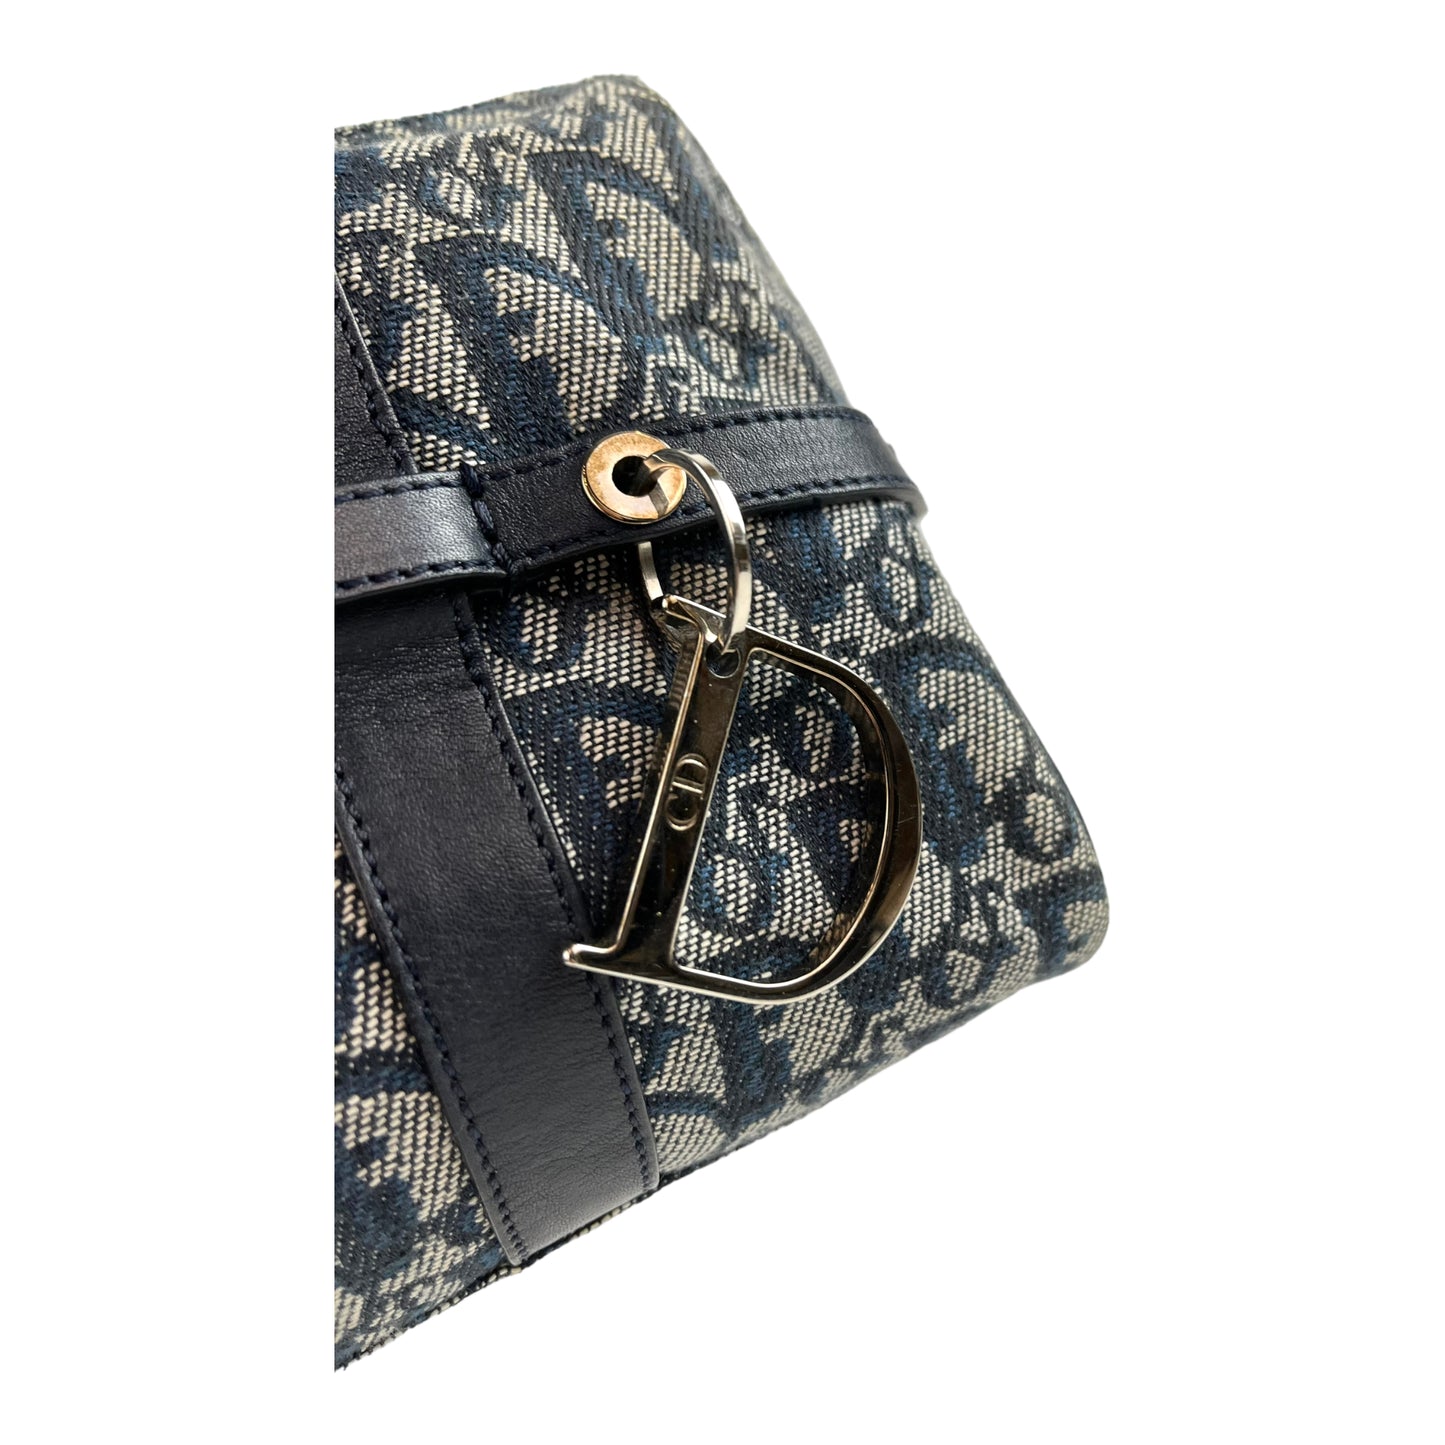 Dior Diorissimo Charms Shoulder Bag